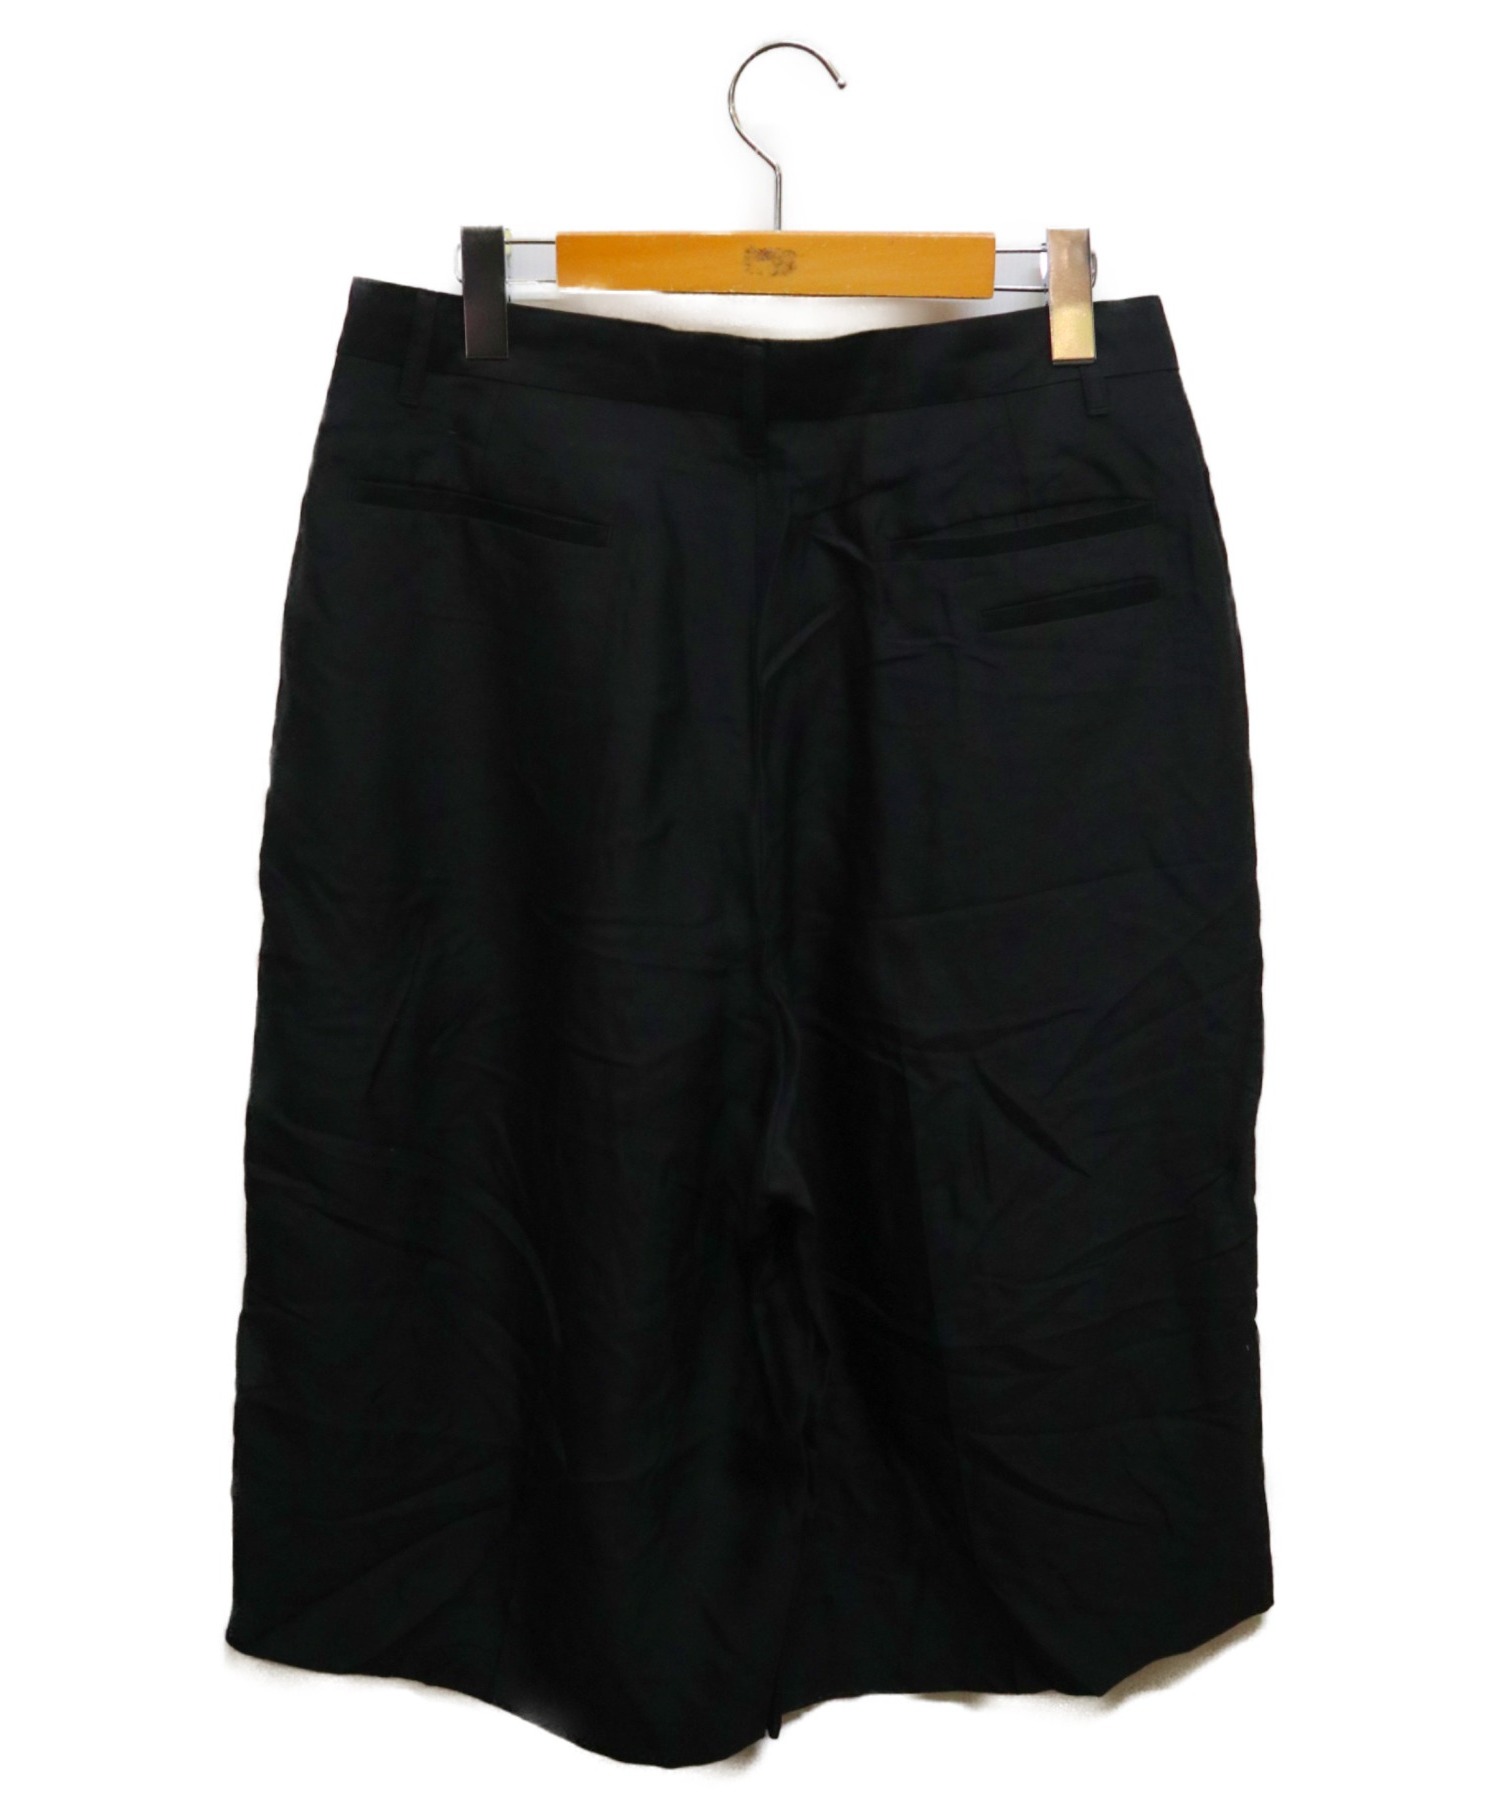 th (ティーエイチ) ワイドハーフパンツ ブラック サイズ:46 Wide Half Pants